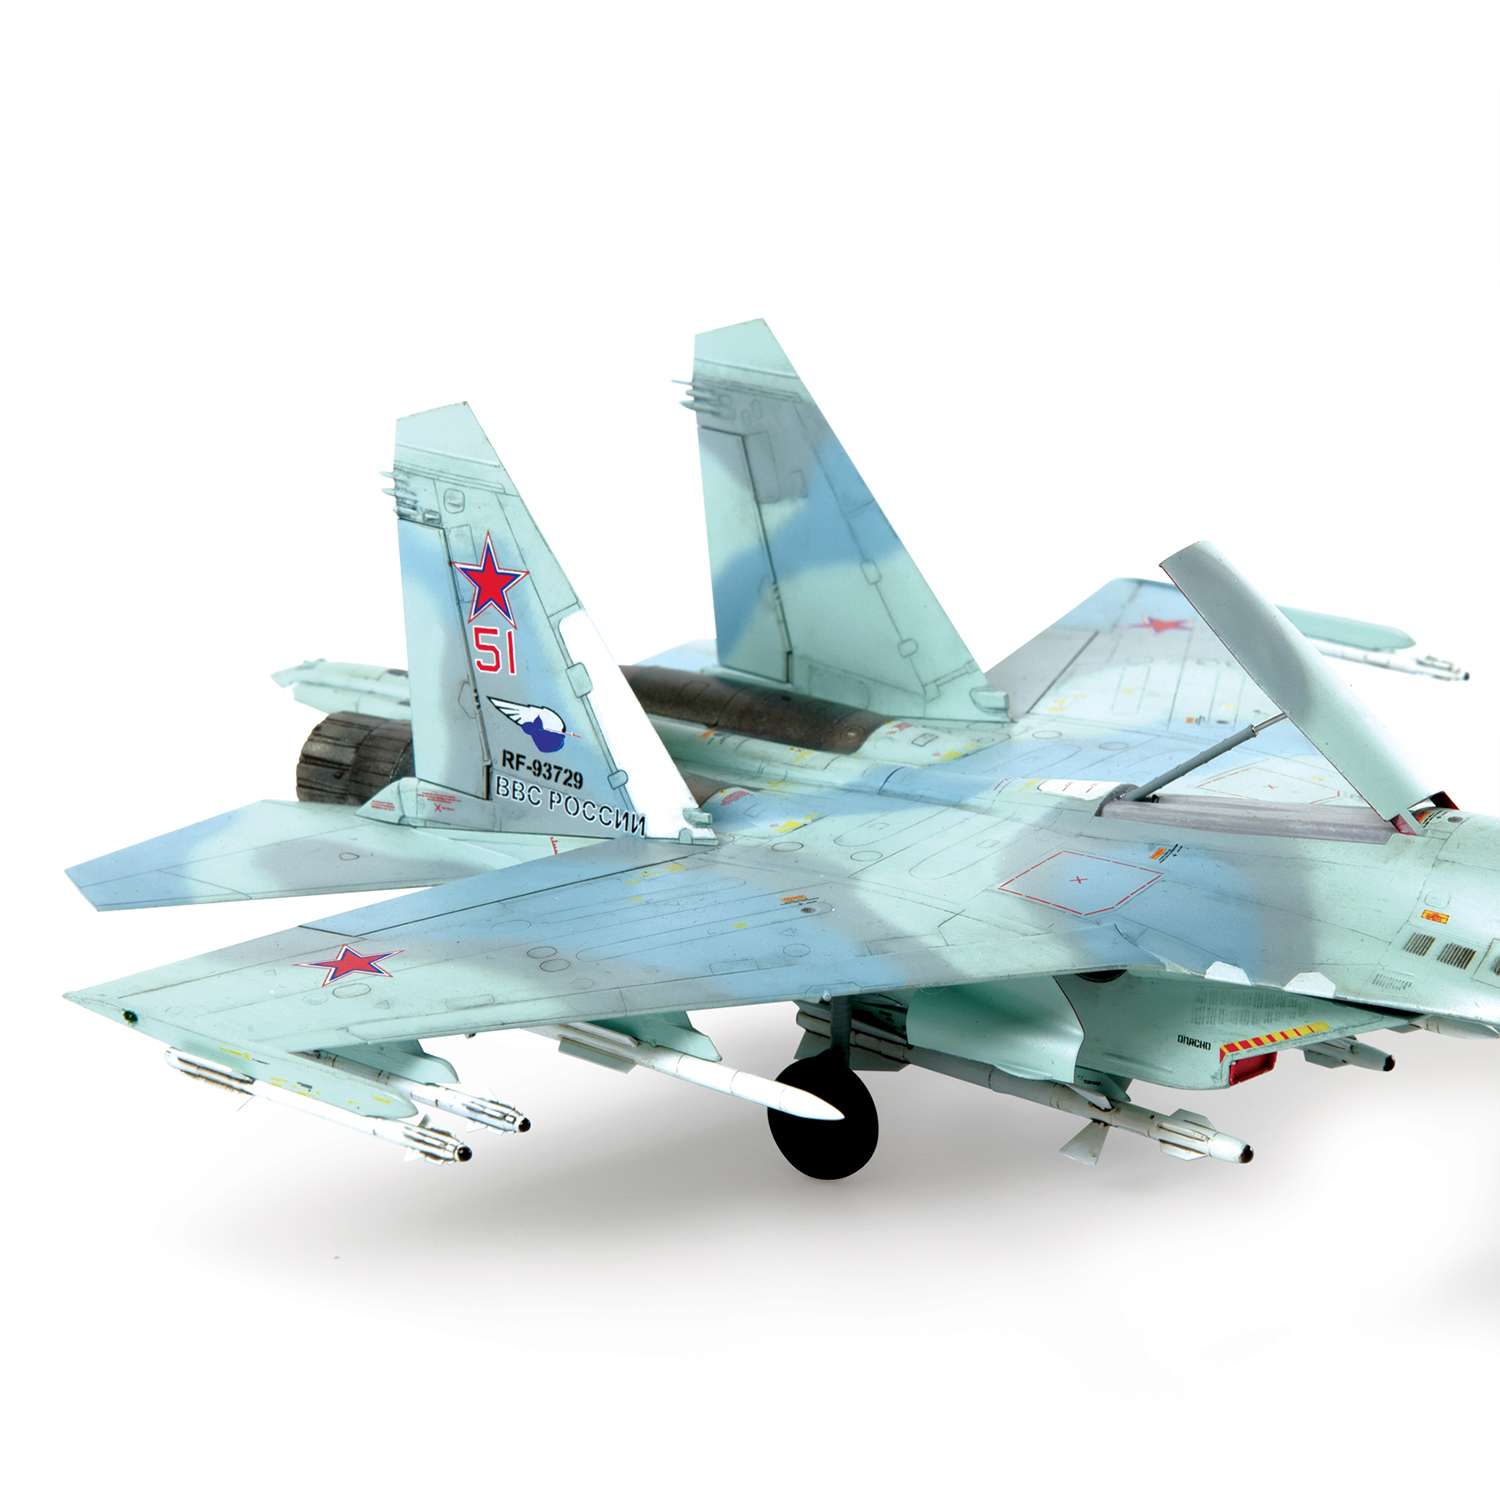 Модель су 27. Сборная модель Су 27. Су 27 модель звезда. Сборная модель zvezda Су 27. 7295 Звезда самолет Су-27см масштаб 1/72.